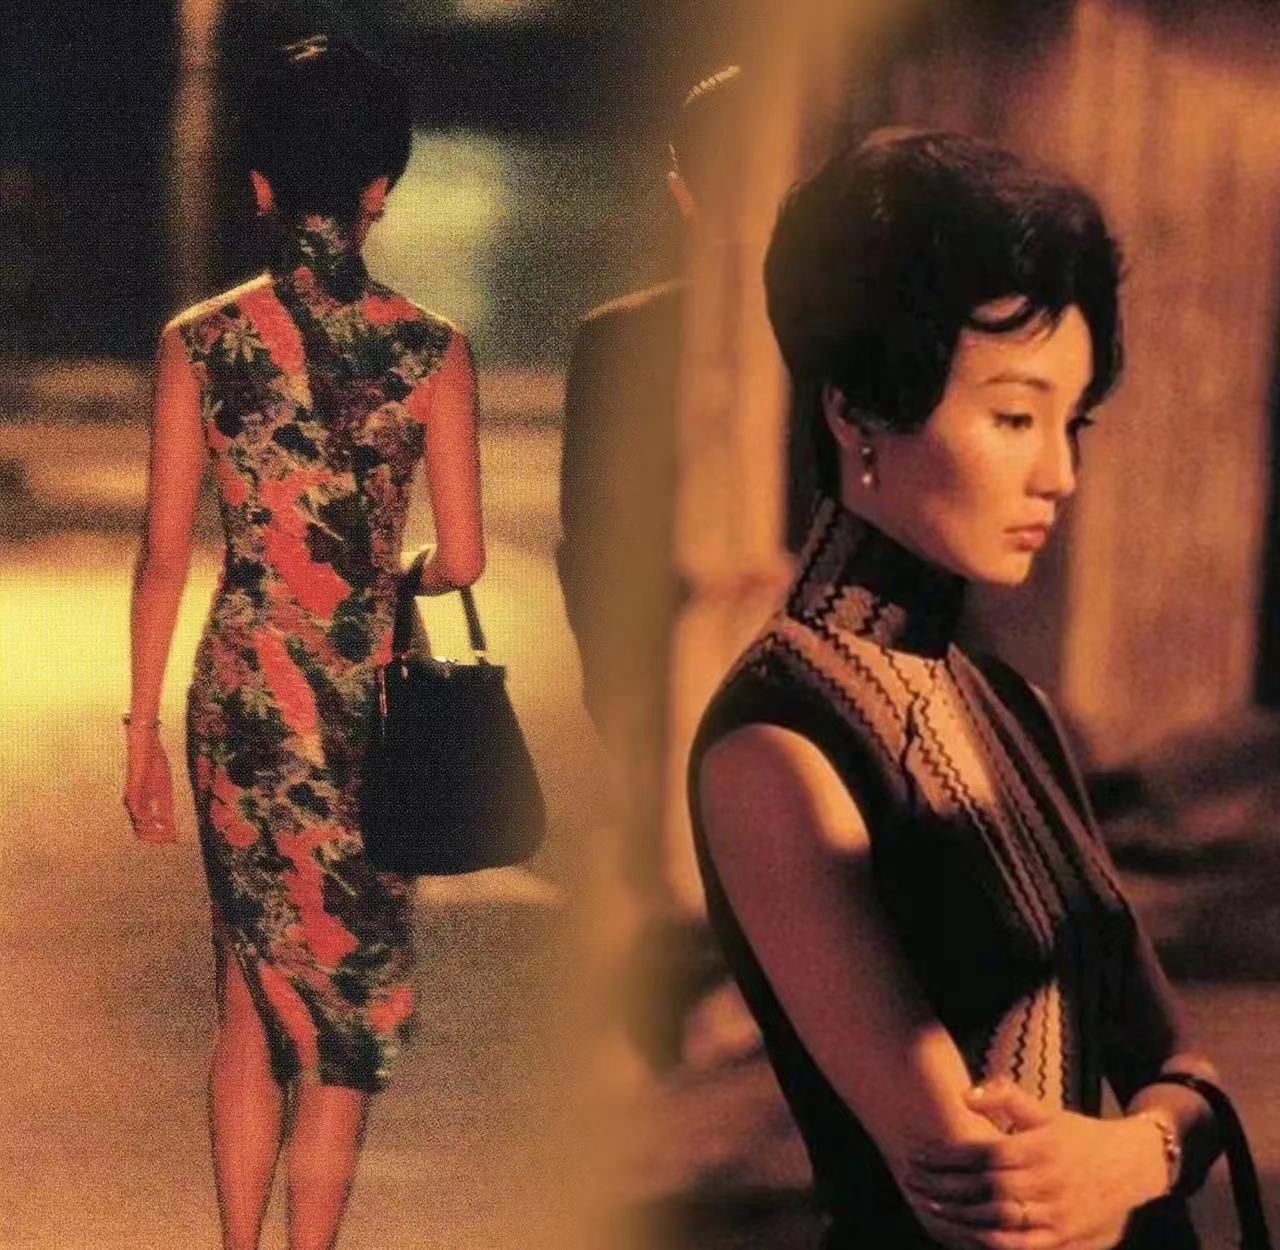 22年前《花样年华》中的张曼玉,是旗袍美女天花板没错吧!